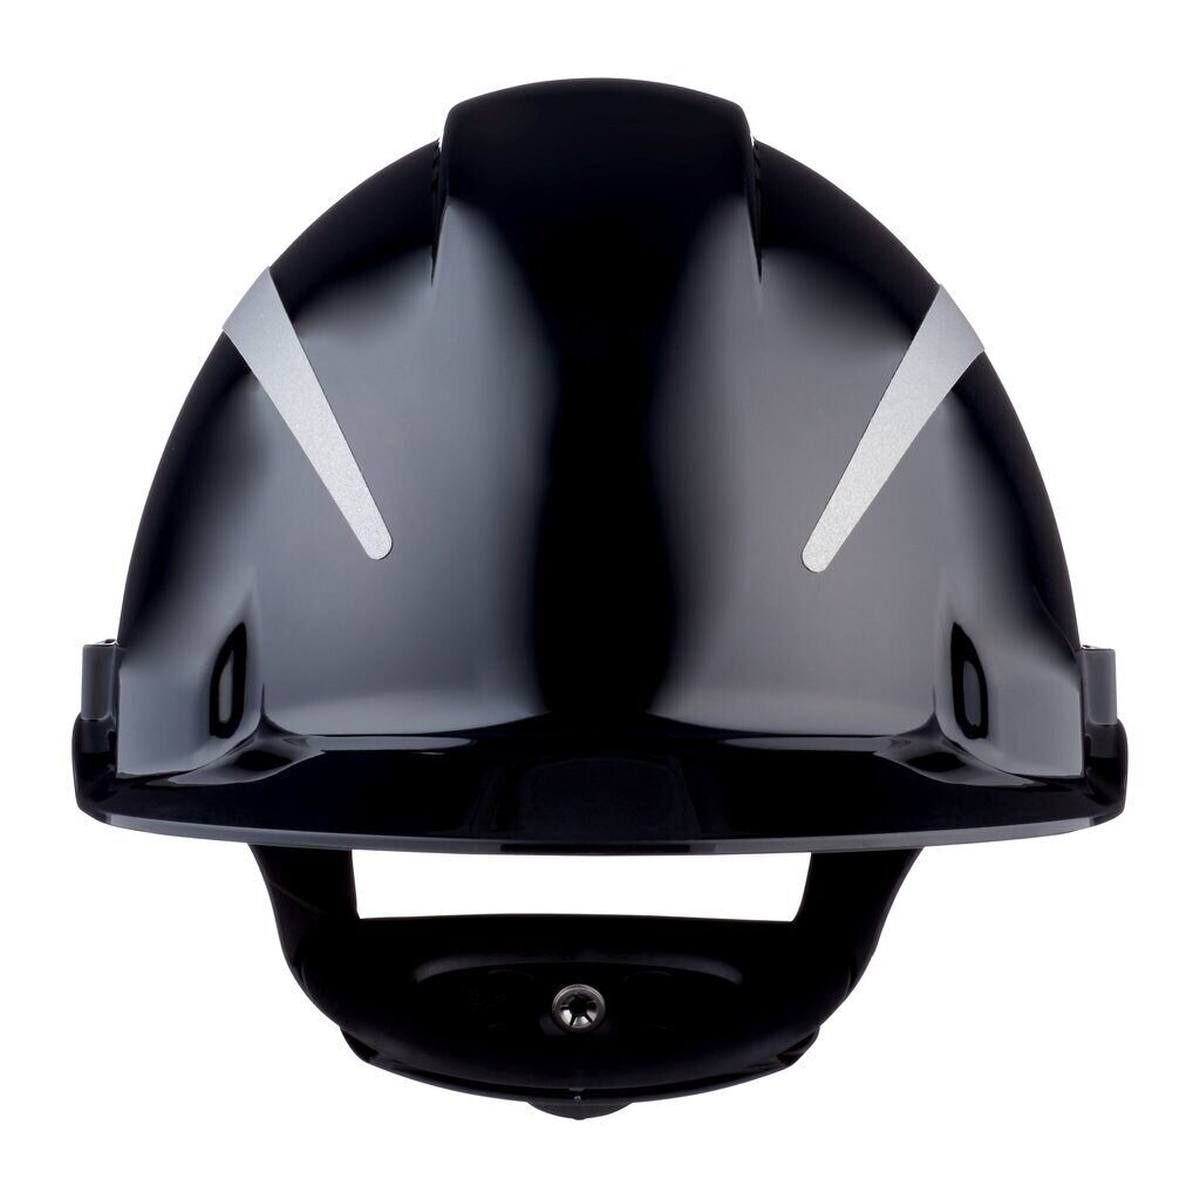 3M Casco de seguridad G3000 con indicador UV, negro, ABS, cierre de trinquete ventilado, banda de sudor de plástico, pegatina reflectante